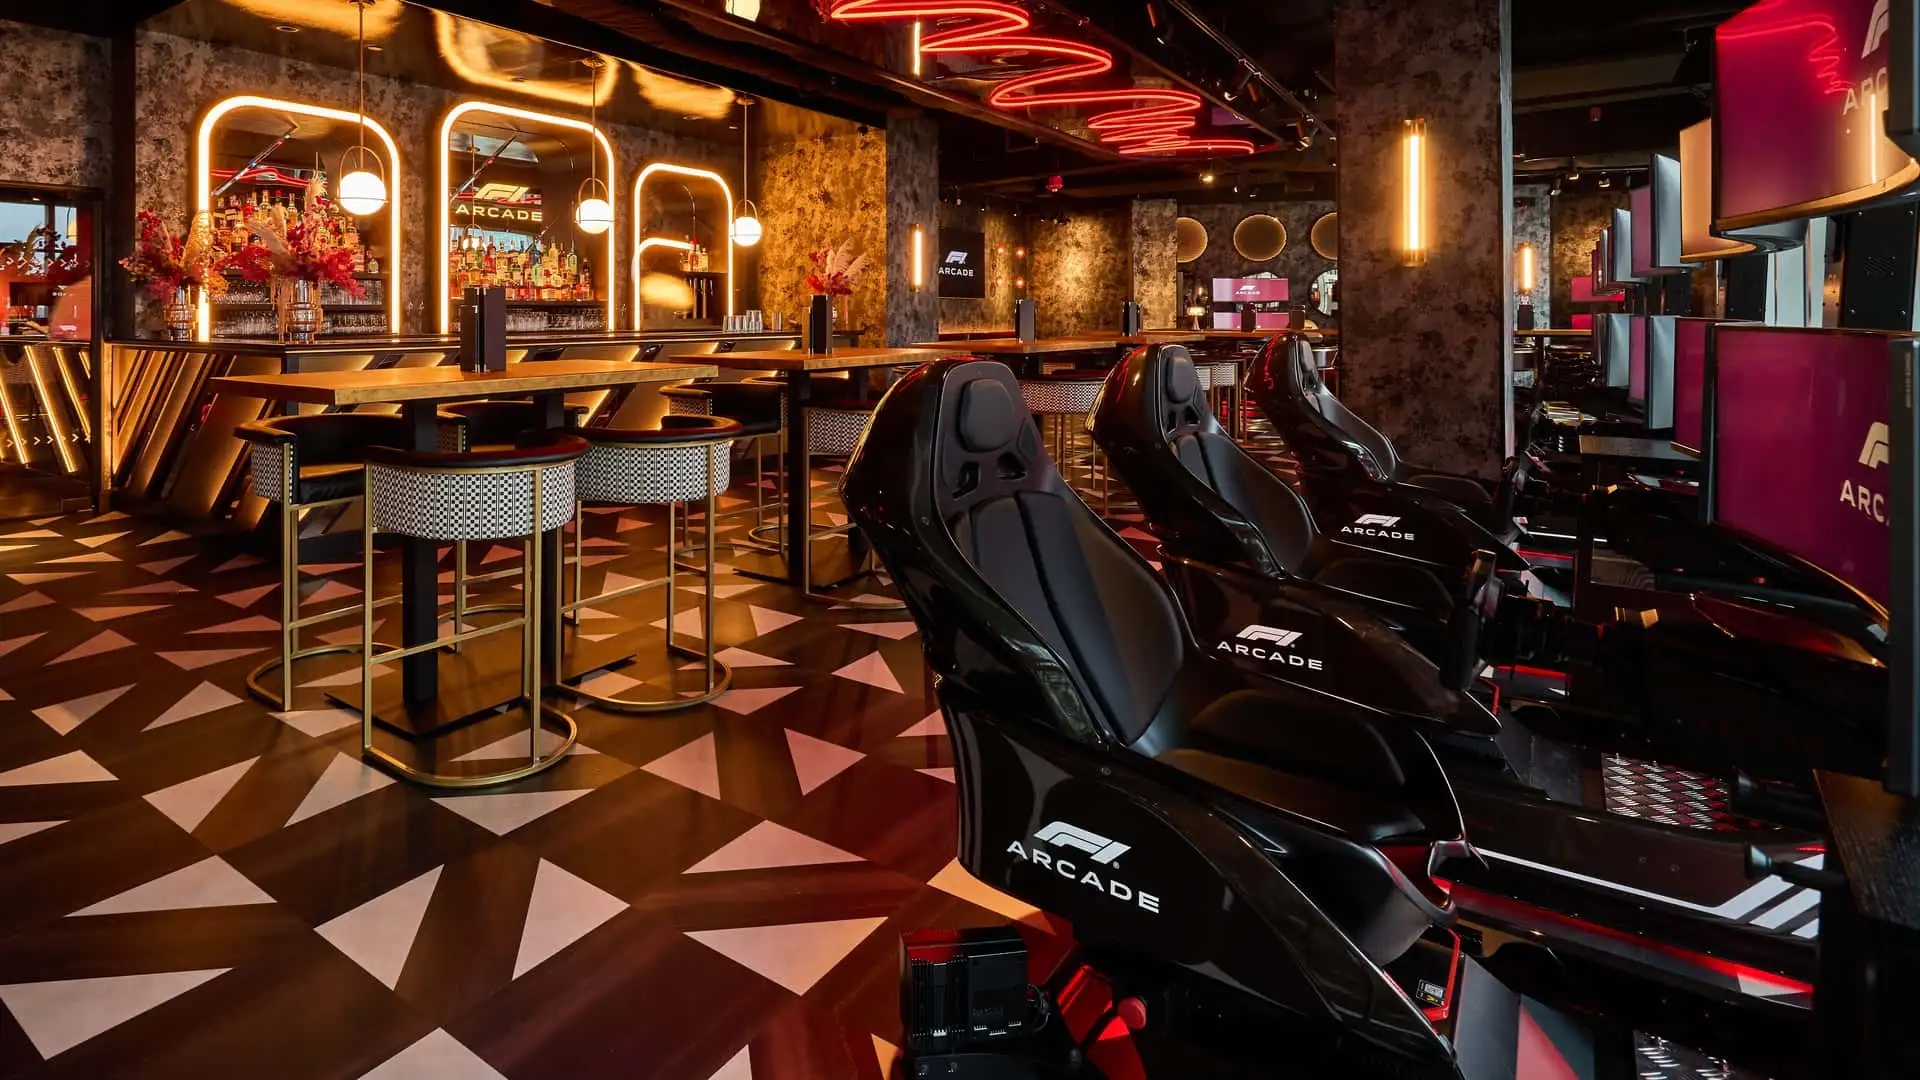 A Boston è stato aperto il ristorante F1 Arcade, che offre cibo delizioso e un giro al volante di un'auto di Formula 1.